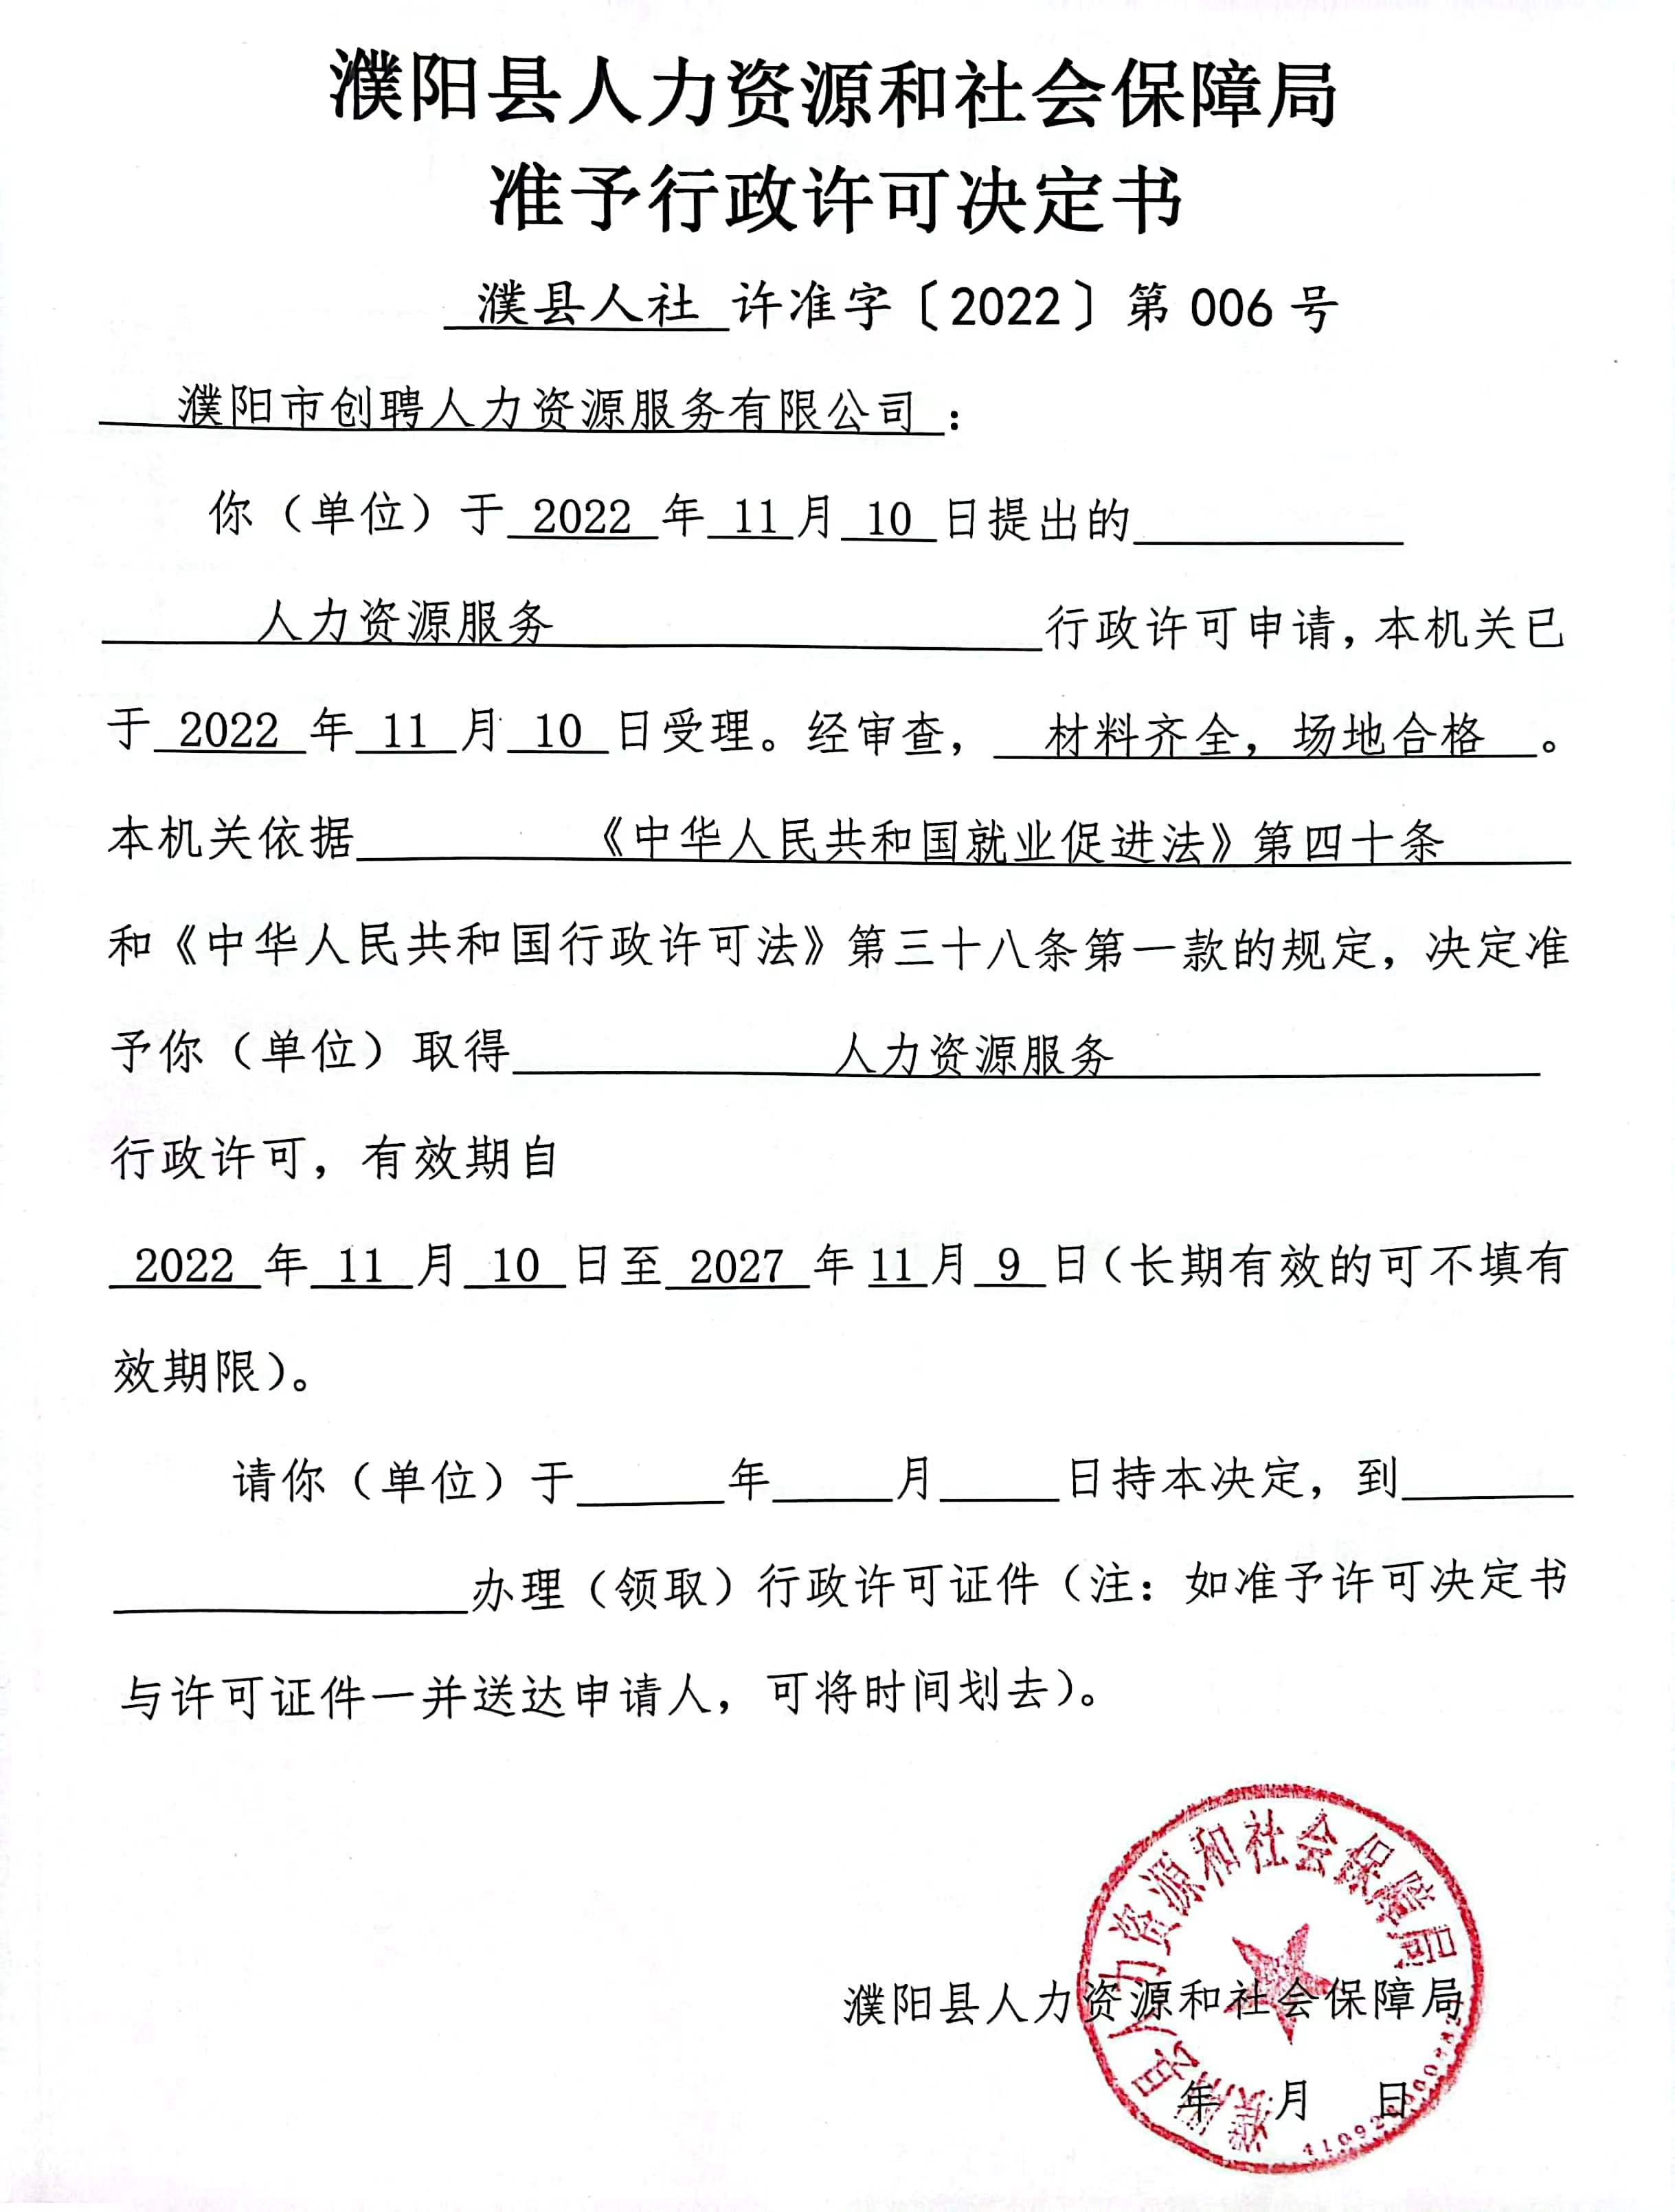 濮阳市创聘人力资源服务有限公司准予行政许可决定书.jpg